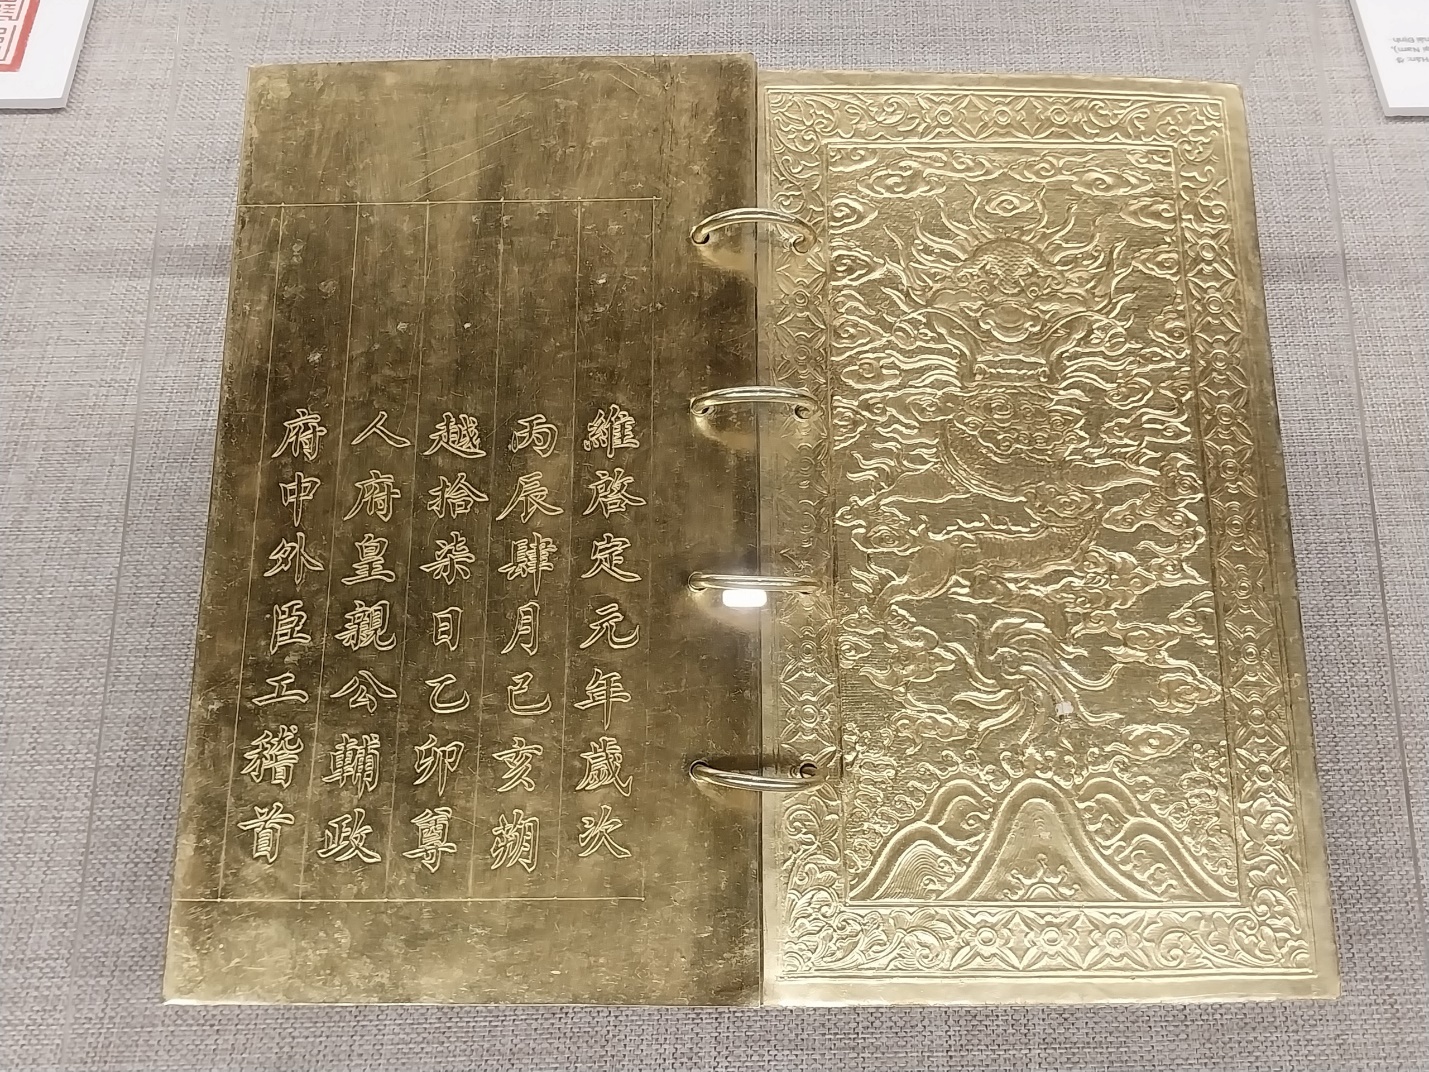 Chiêm ngưỡng cổ vật vô giá tại bảo tàng trăm tuổi ở Huế - 4